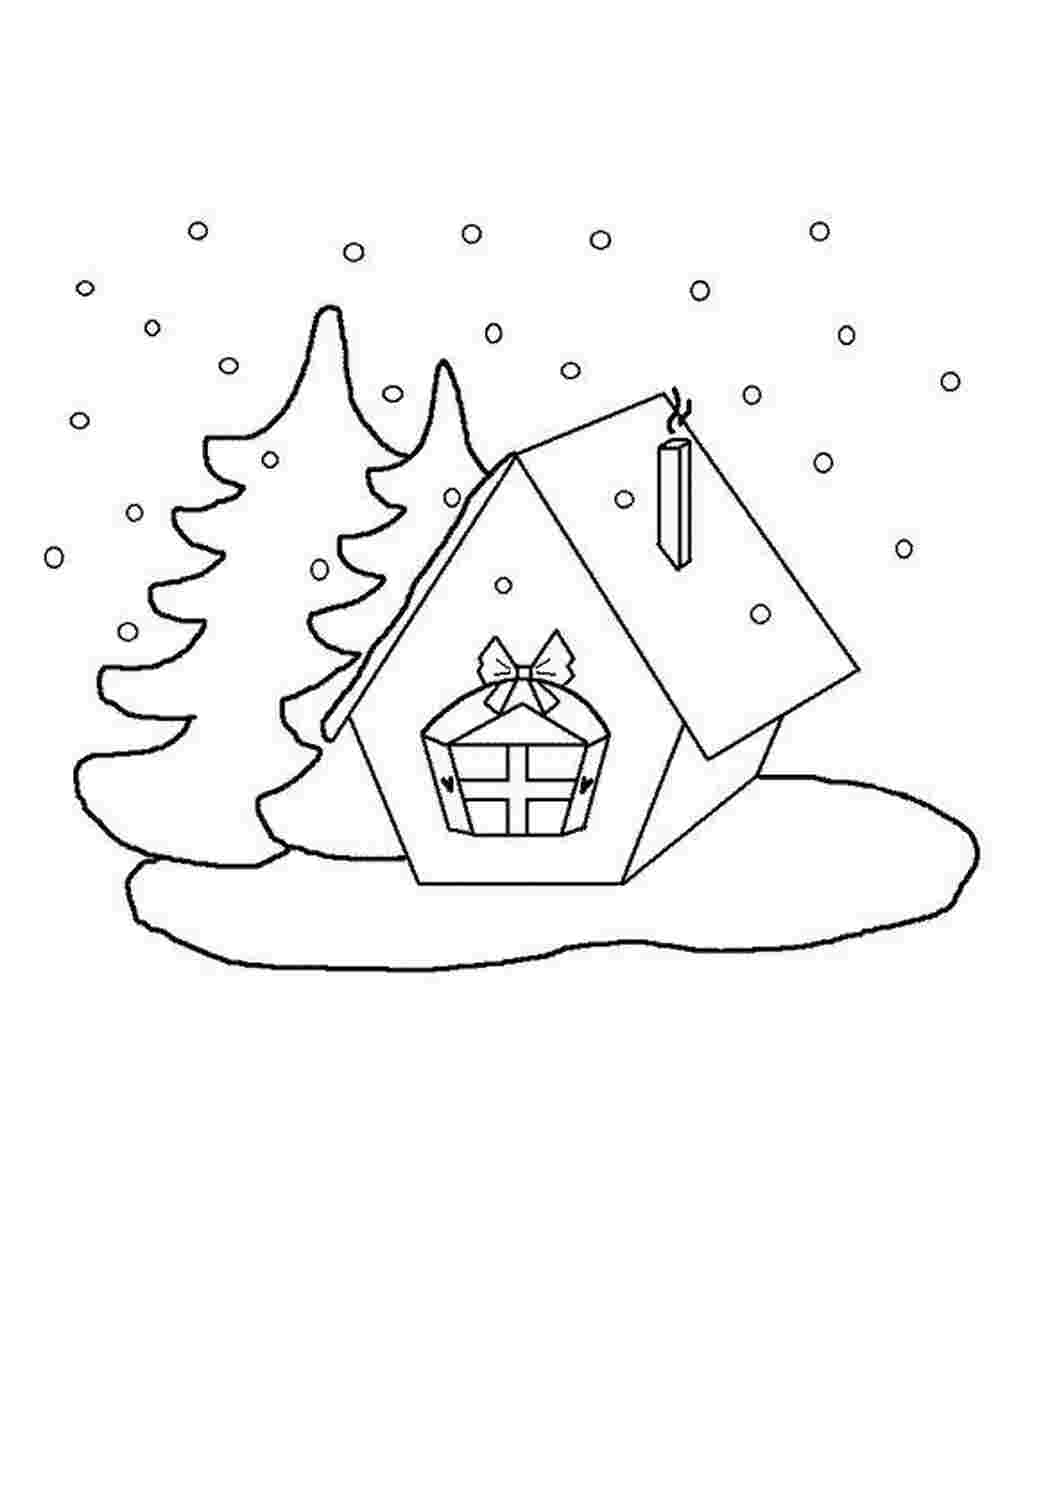 Раскраски Маленькая избушка с двумя елочками Маленькая избушка с двумя елочками Раскраски для детского сада Раскраски на тему зима